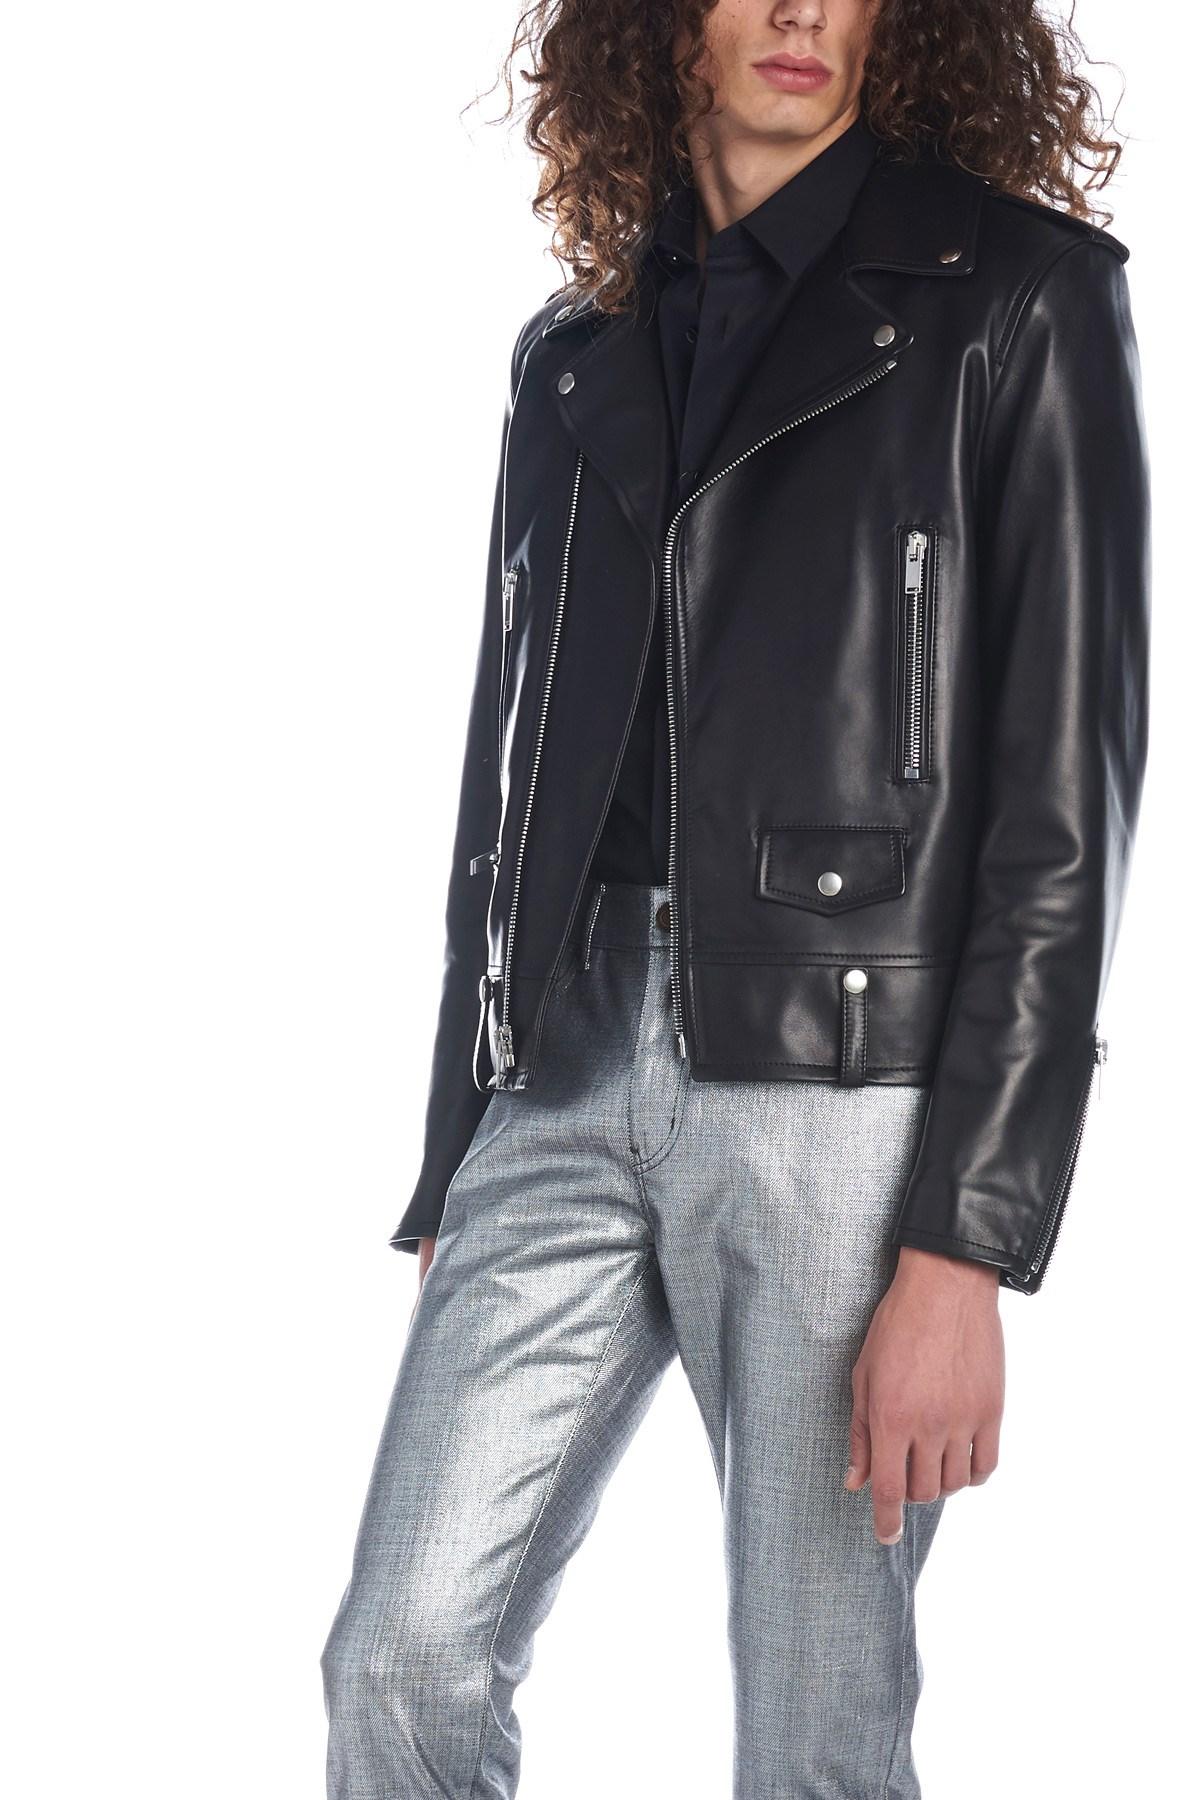 Saint Laurent Mens Classic Black Leather Motorcycle Biker Jacket Size 50 For Sale 2